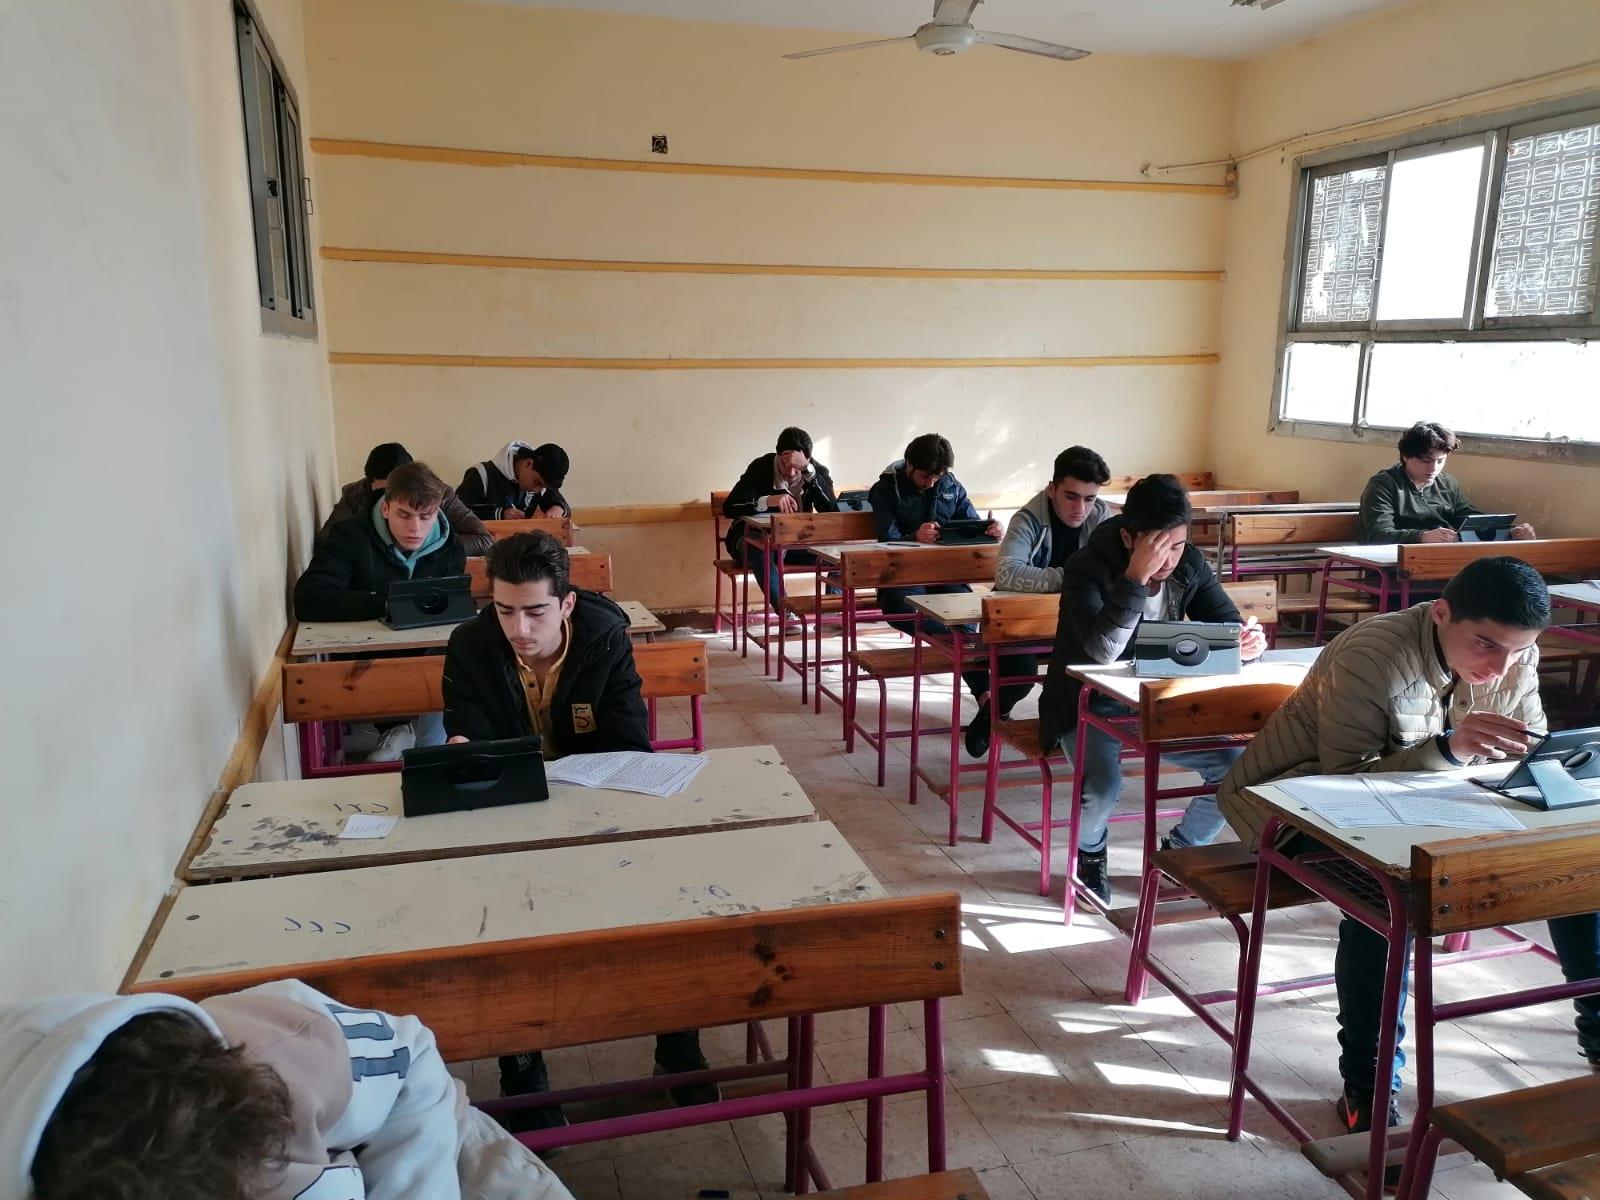  طلاب اولي وثانية ثانوي يؤدون امتحانات نصف العام الكترونيا وسط اجراءات احترازية